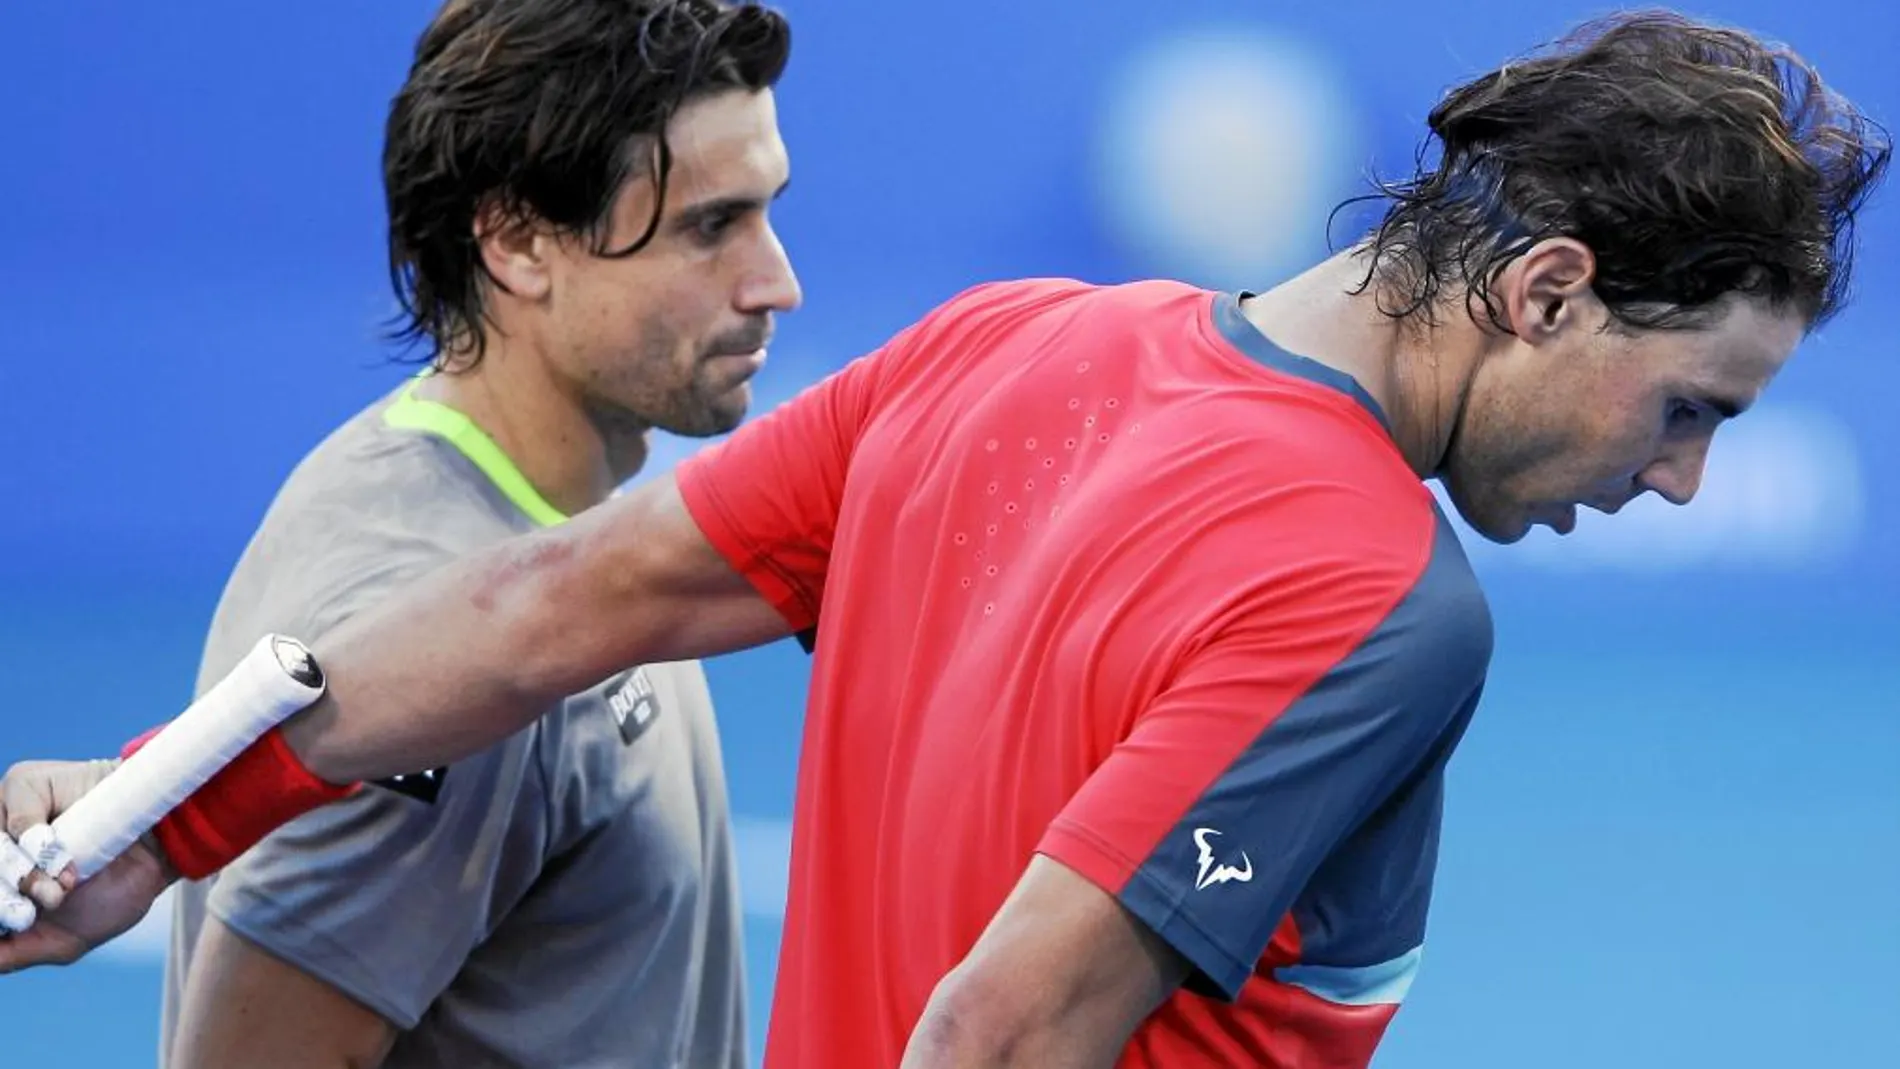 NOS VEMOS EN DOHA. La temporada oficial para David Ferrer y Rafa Nadal arrancará el lunes con el torneo de Doha. Los dos jugadores españoles se saludaron amistosamente al final del partido en Abu Dabi y se citaron para el torneo que se disputa en la capital qatarí